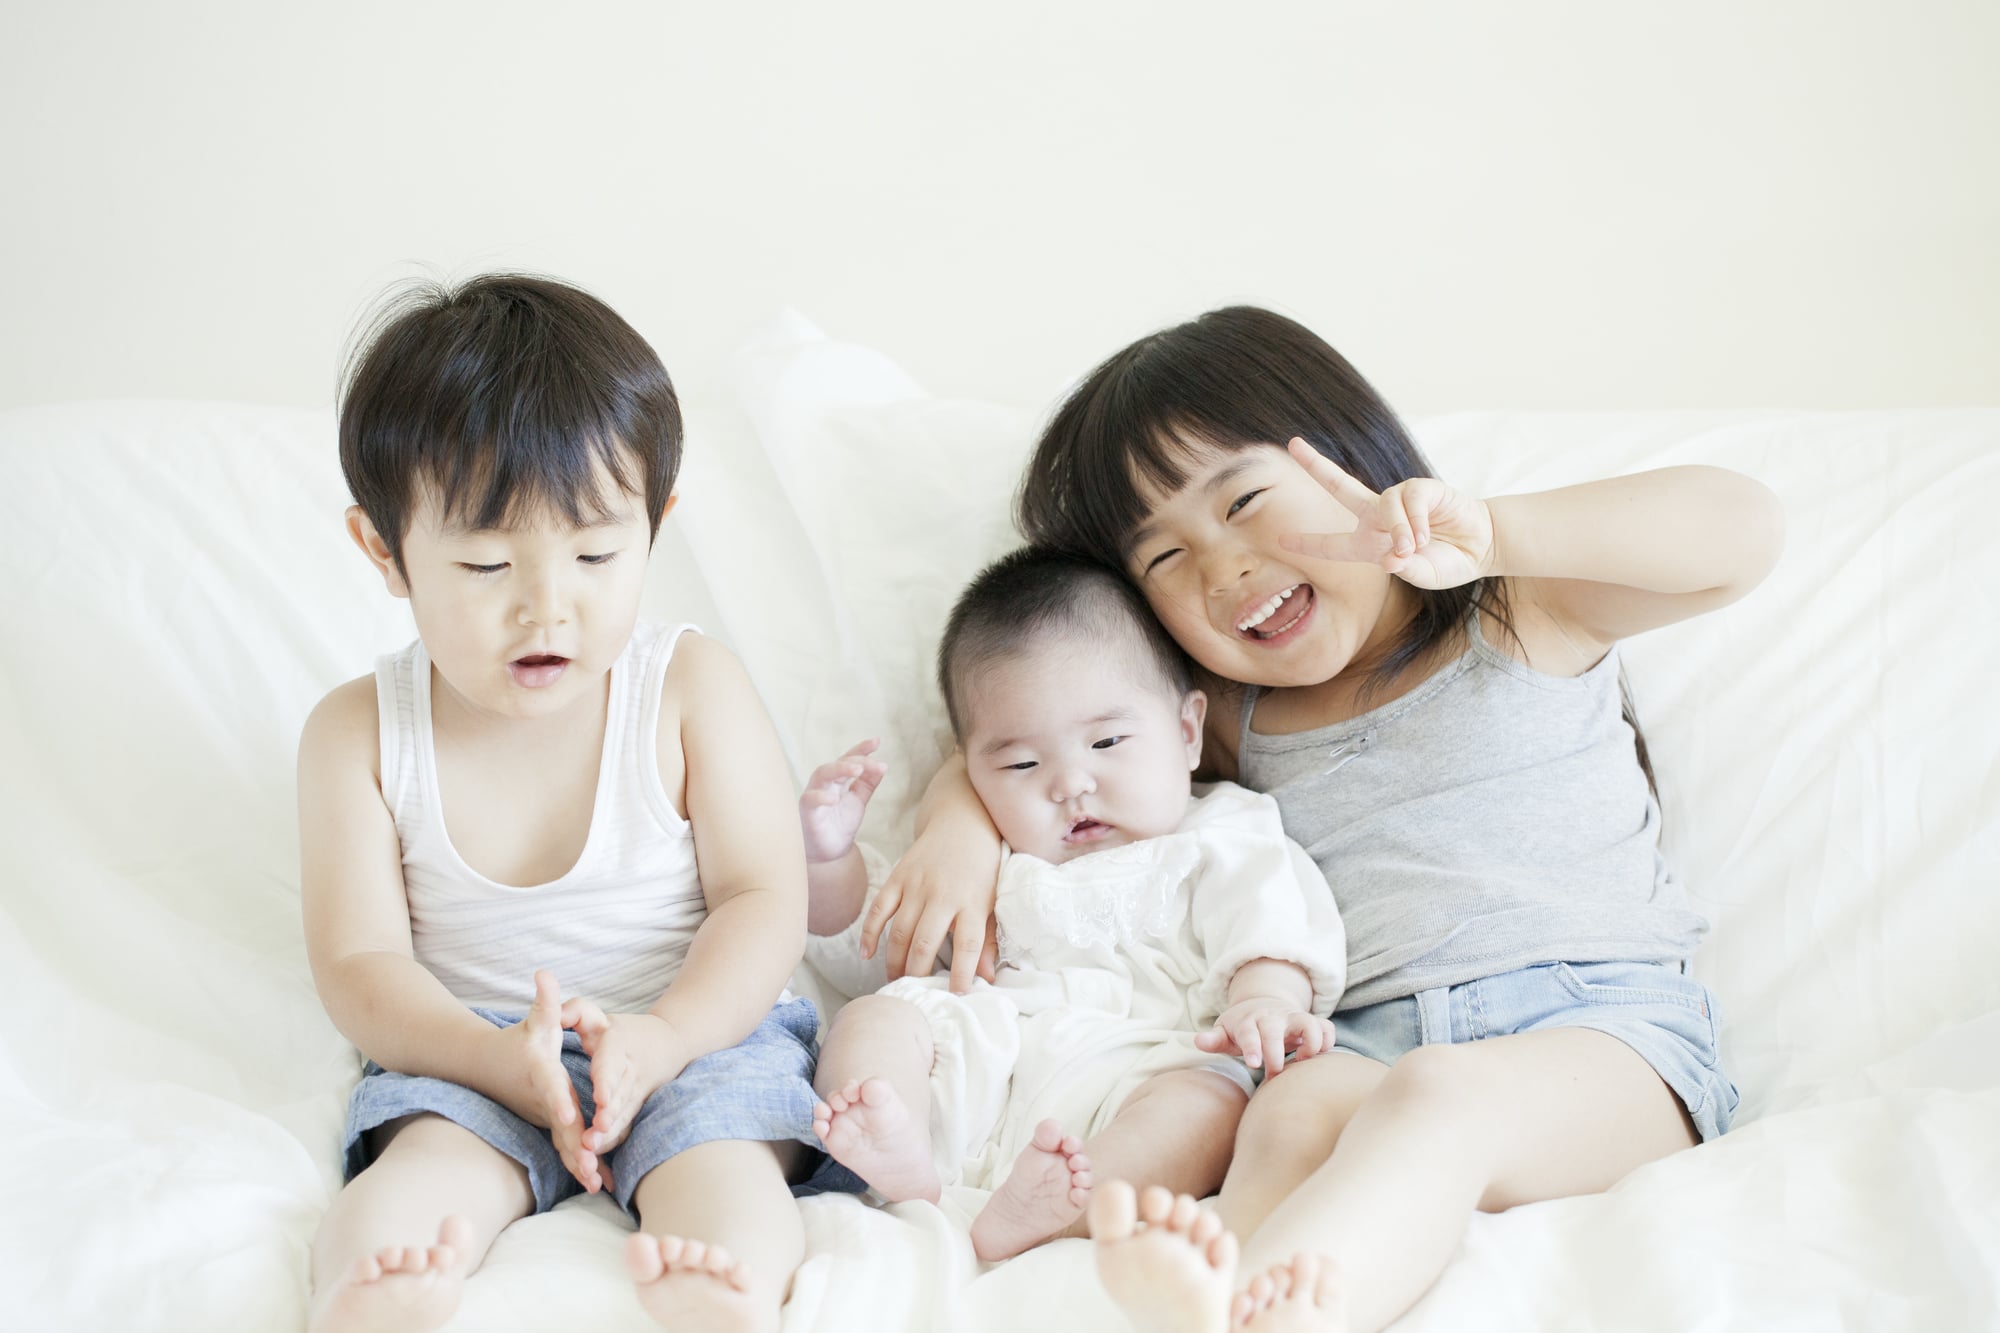 Узнай маму японское. Японские дети js. Фото детей и мамочек Япония. Детская китайская порносайт. Фото детей Япония обучение.